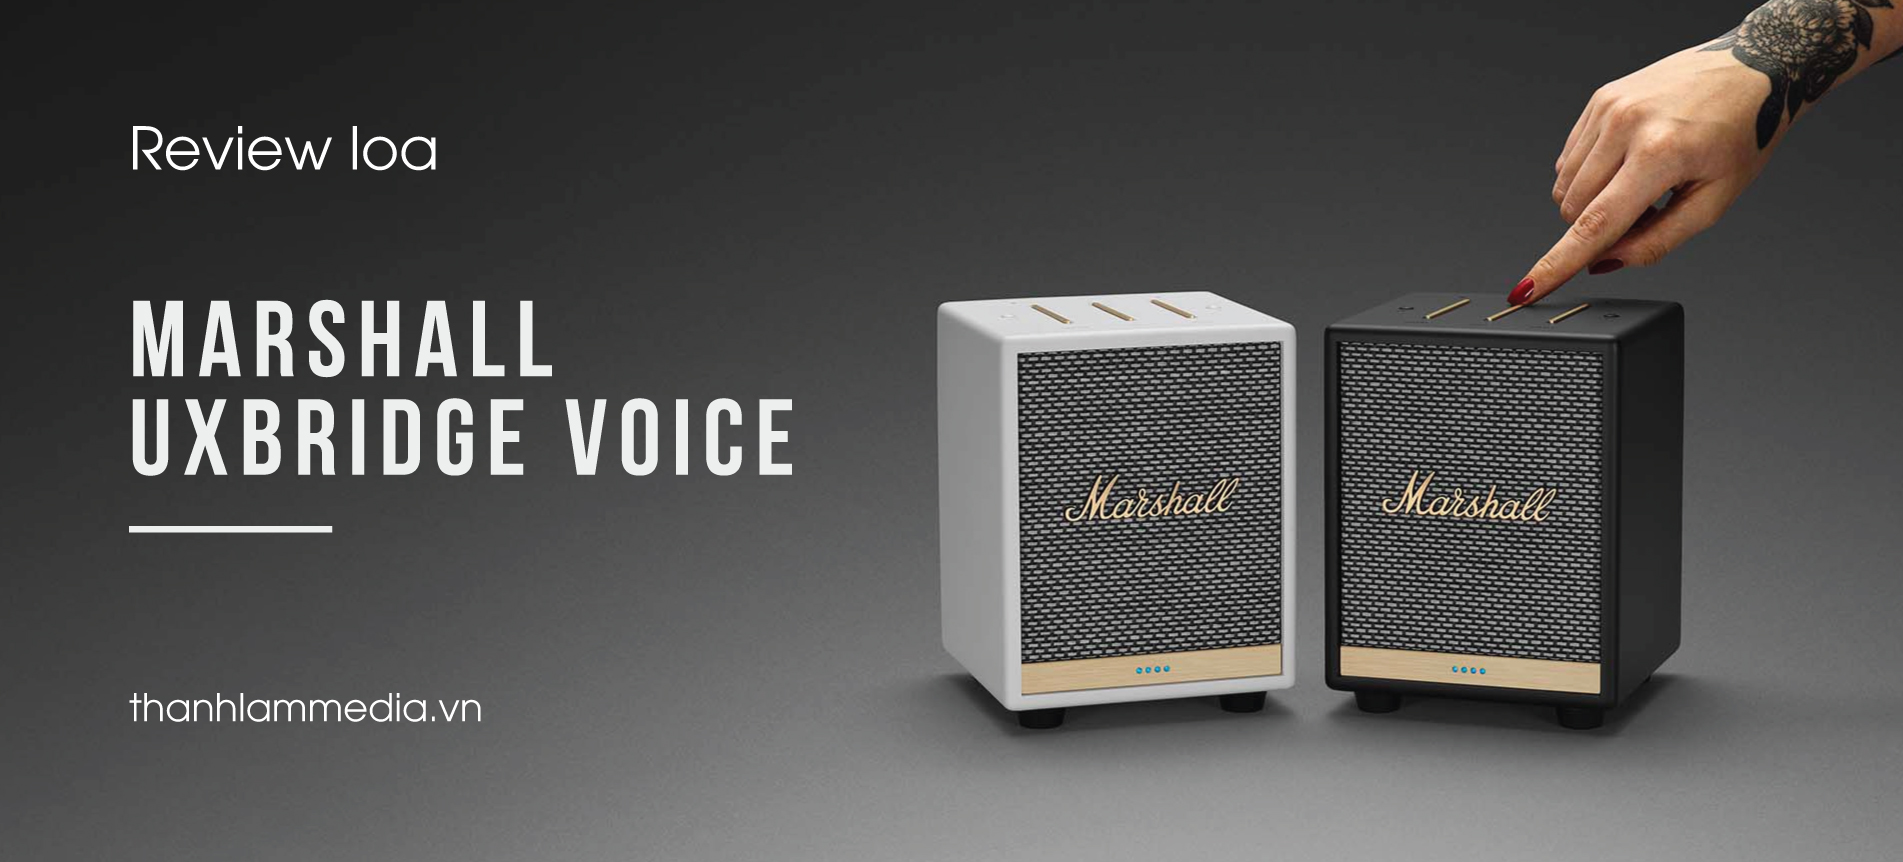 Review loa Marshall Uxbridge Voice - siêu nhỏ gọn, phong cách cực khác biệt 49